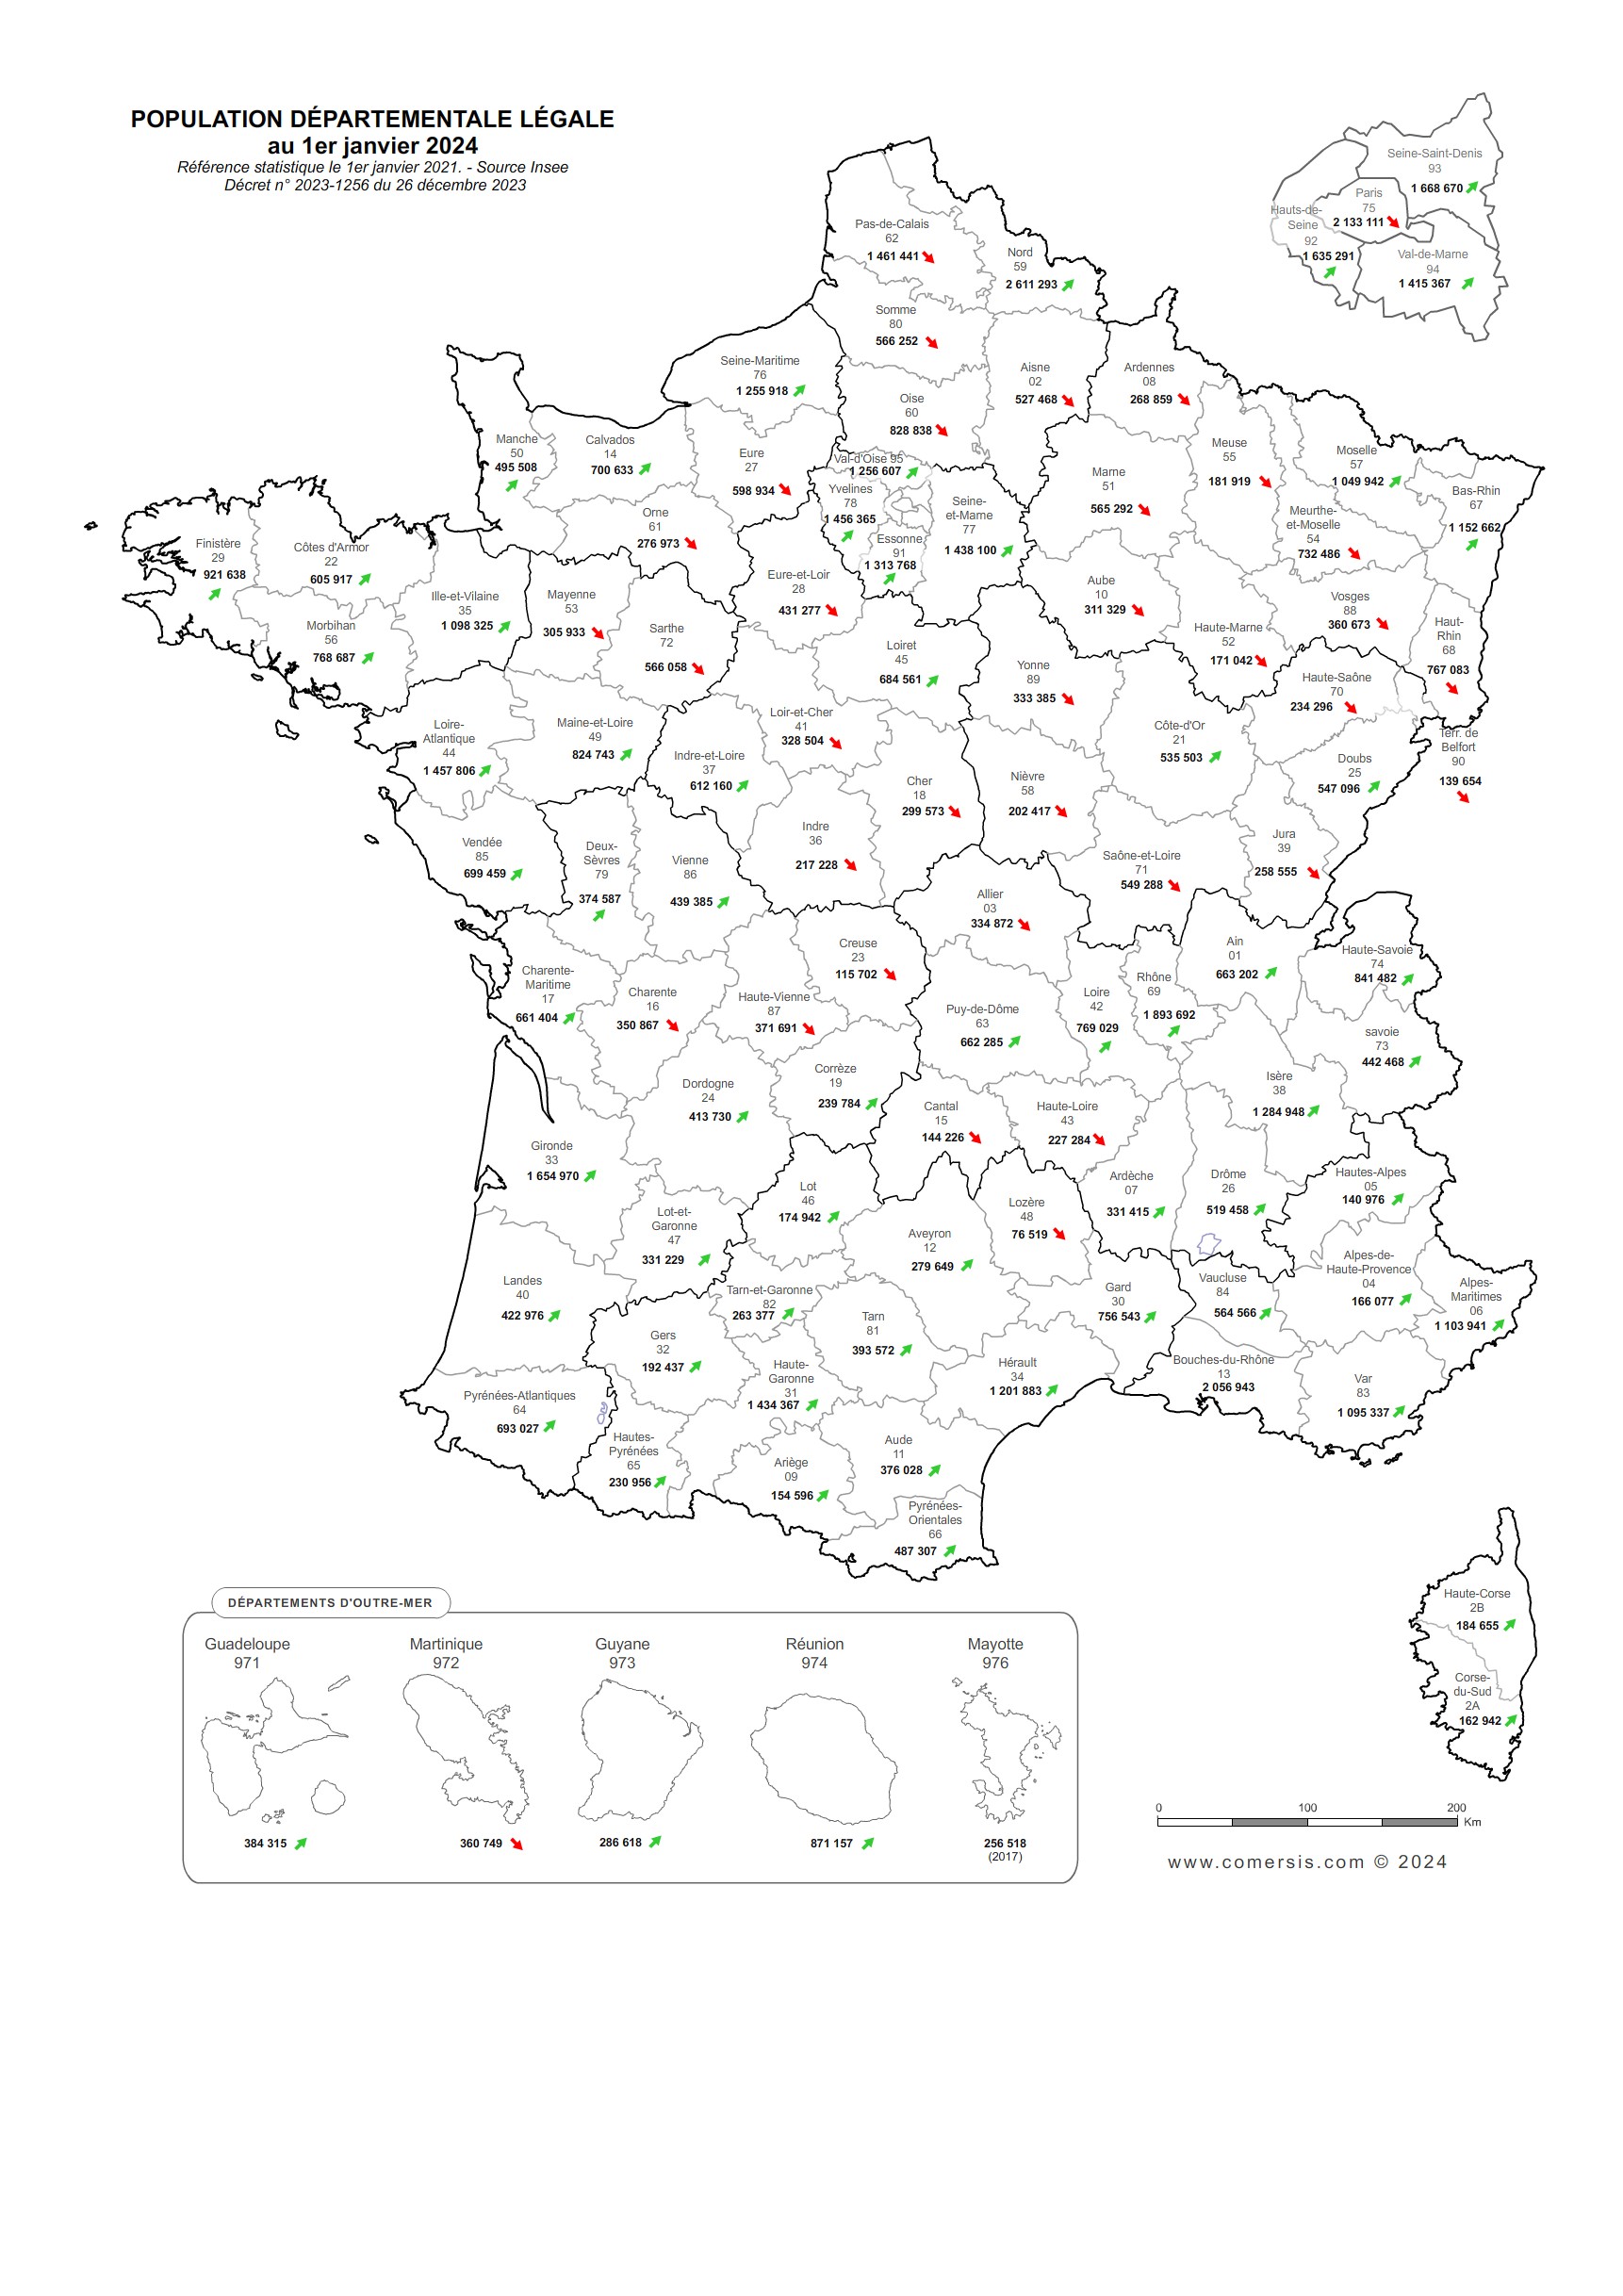 Carte de la population départementale de France 2024